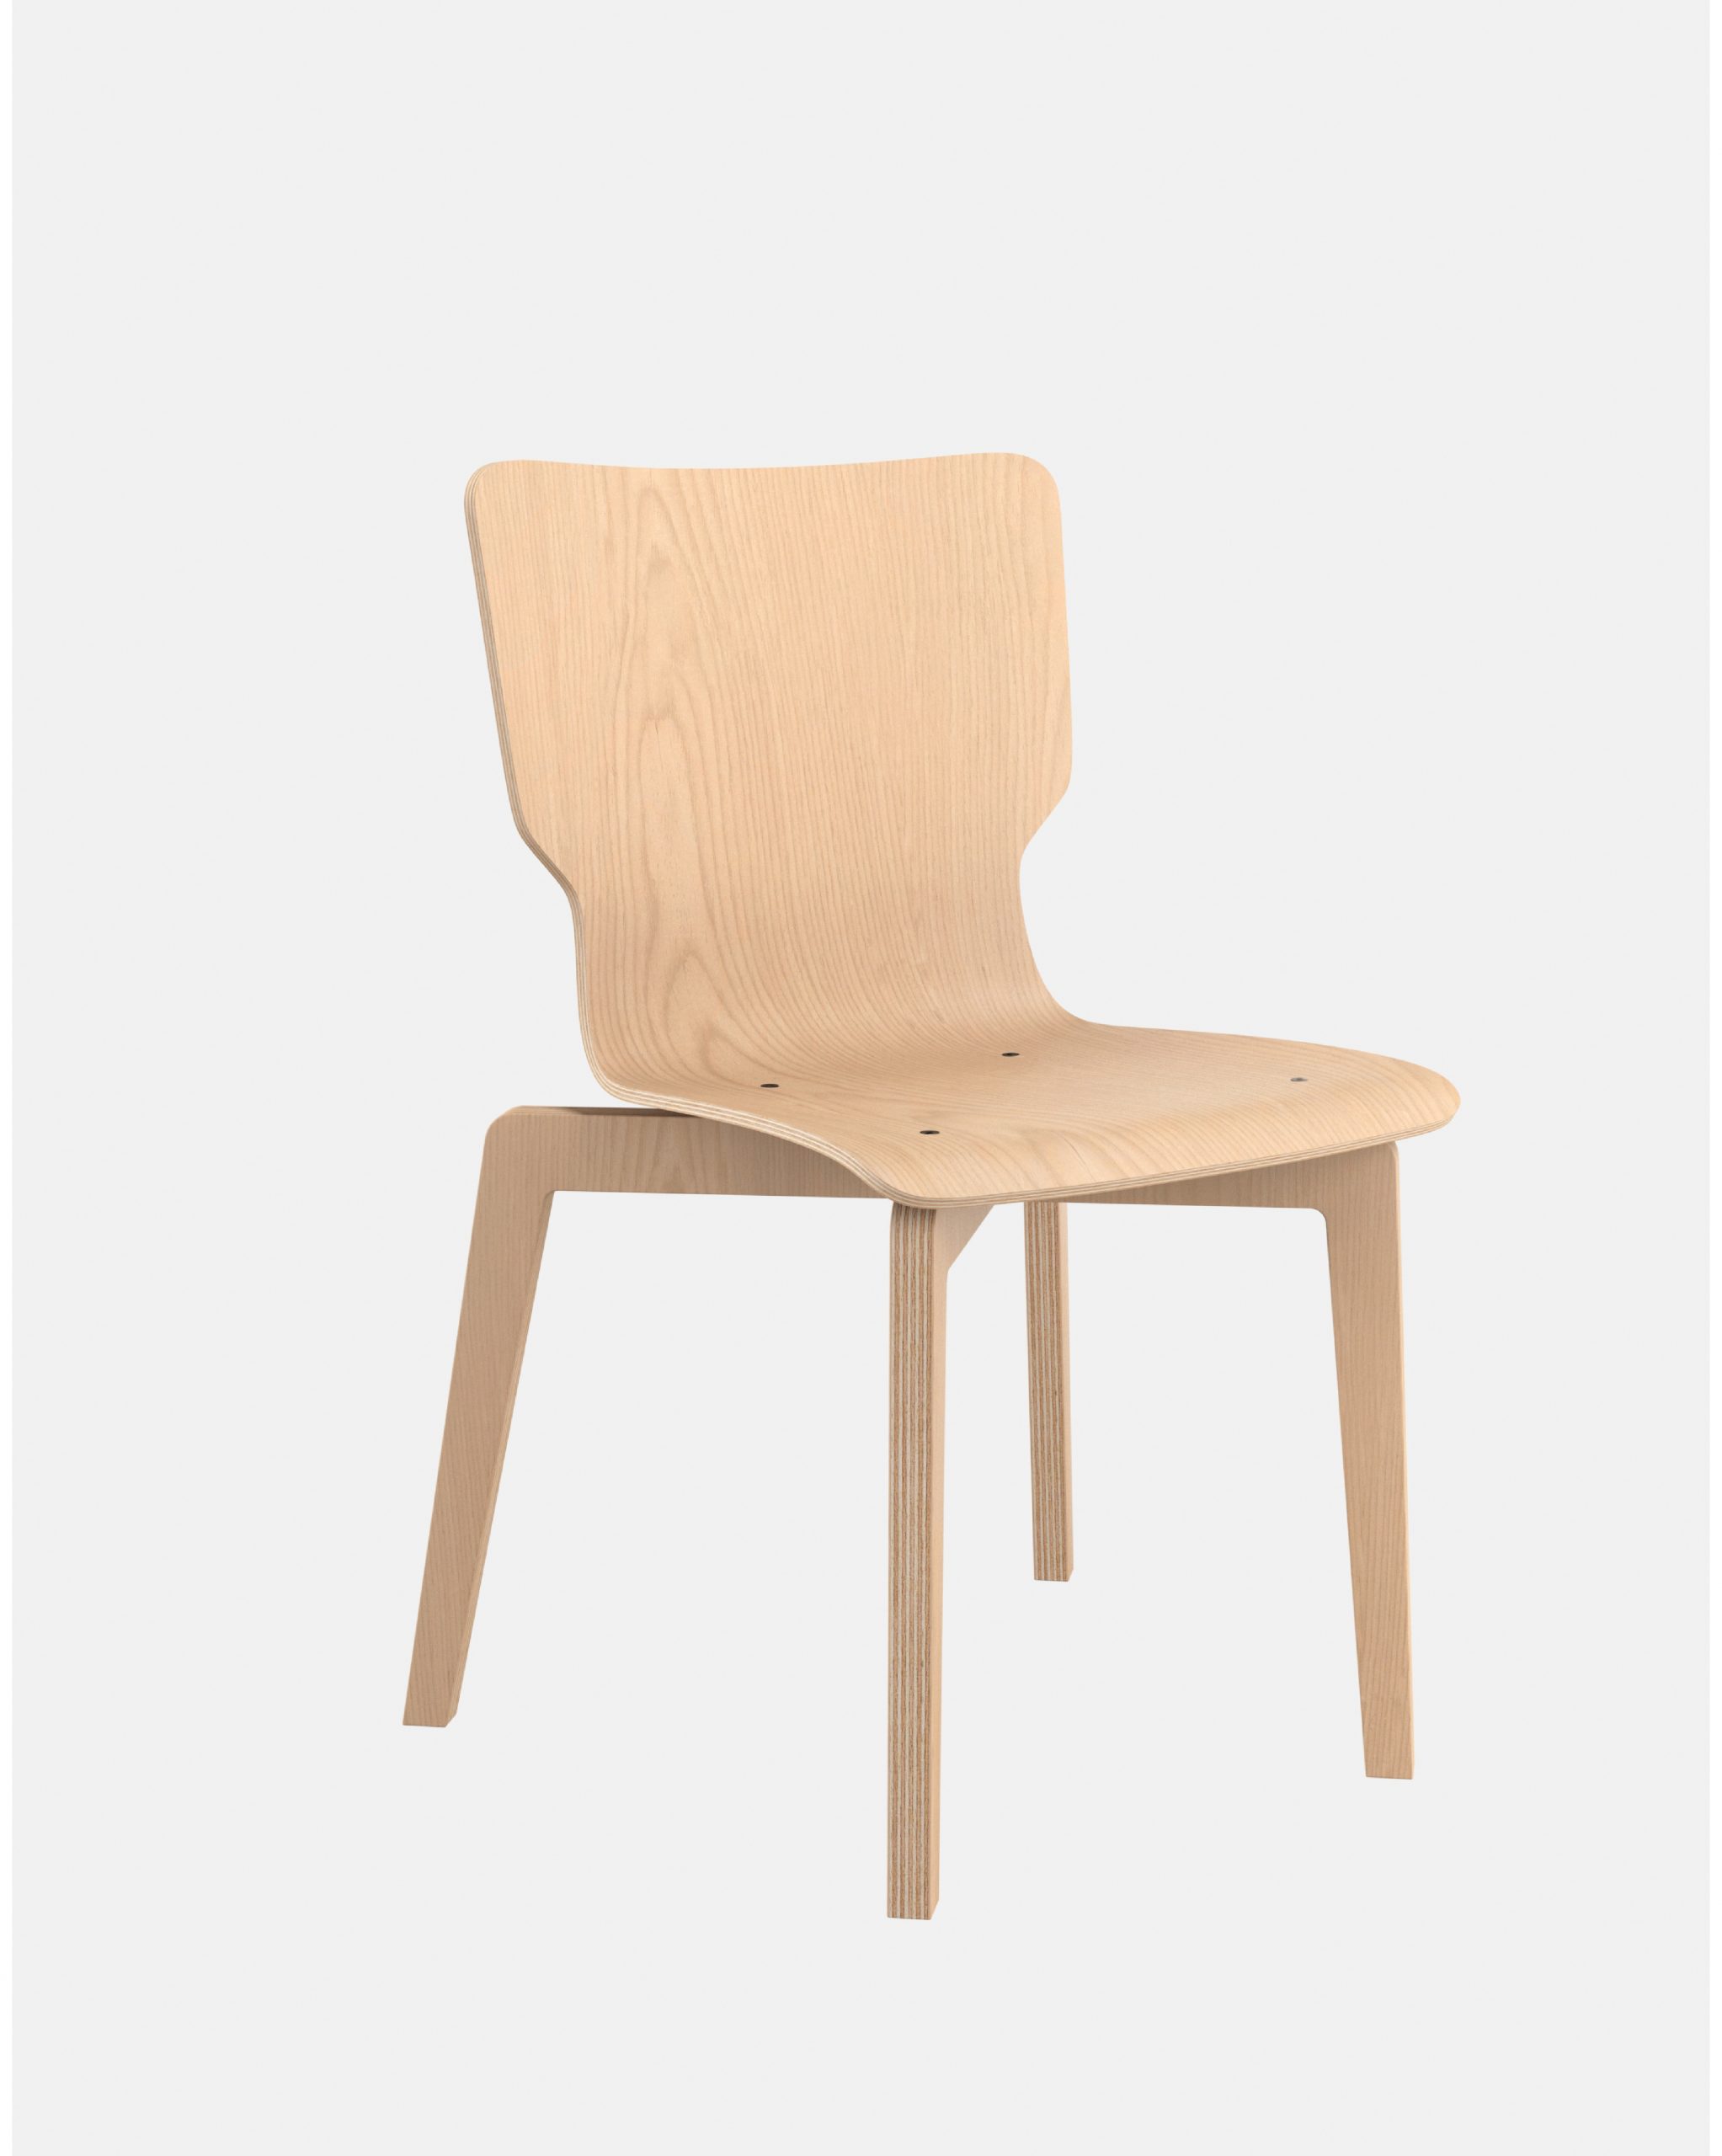 Chaise empilable - chaise bois français - chaise éco conception